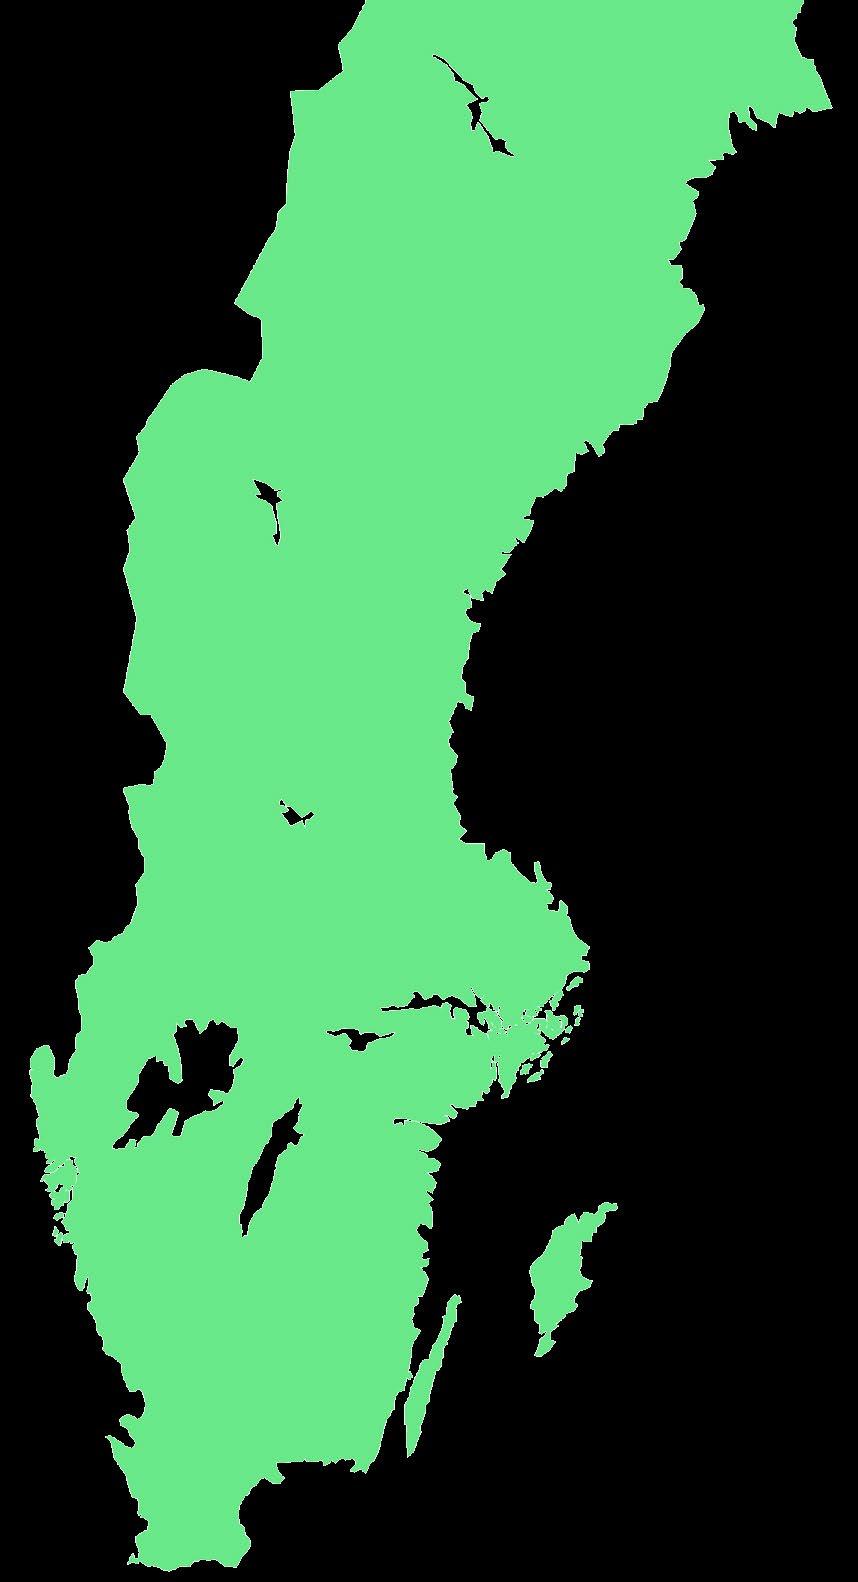 FINLAND SVERIGE 460 miljoner år sedan LOCKNE DELLEN 35 KM NORDOST OM HUDIKSVALL 25 KM SÖDER OM ÖSTERSUND 460 miljoner år sedan MÅLINGEN 3 KM SYDOST OM HACKÅS 89 miljoner år sedan 380 miljoner år